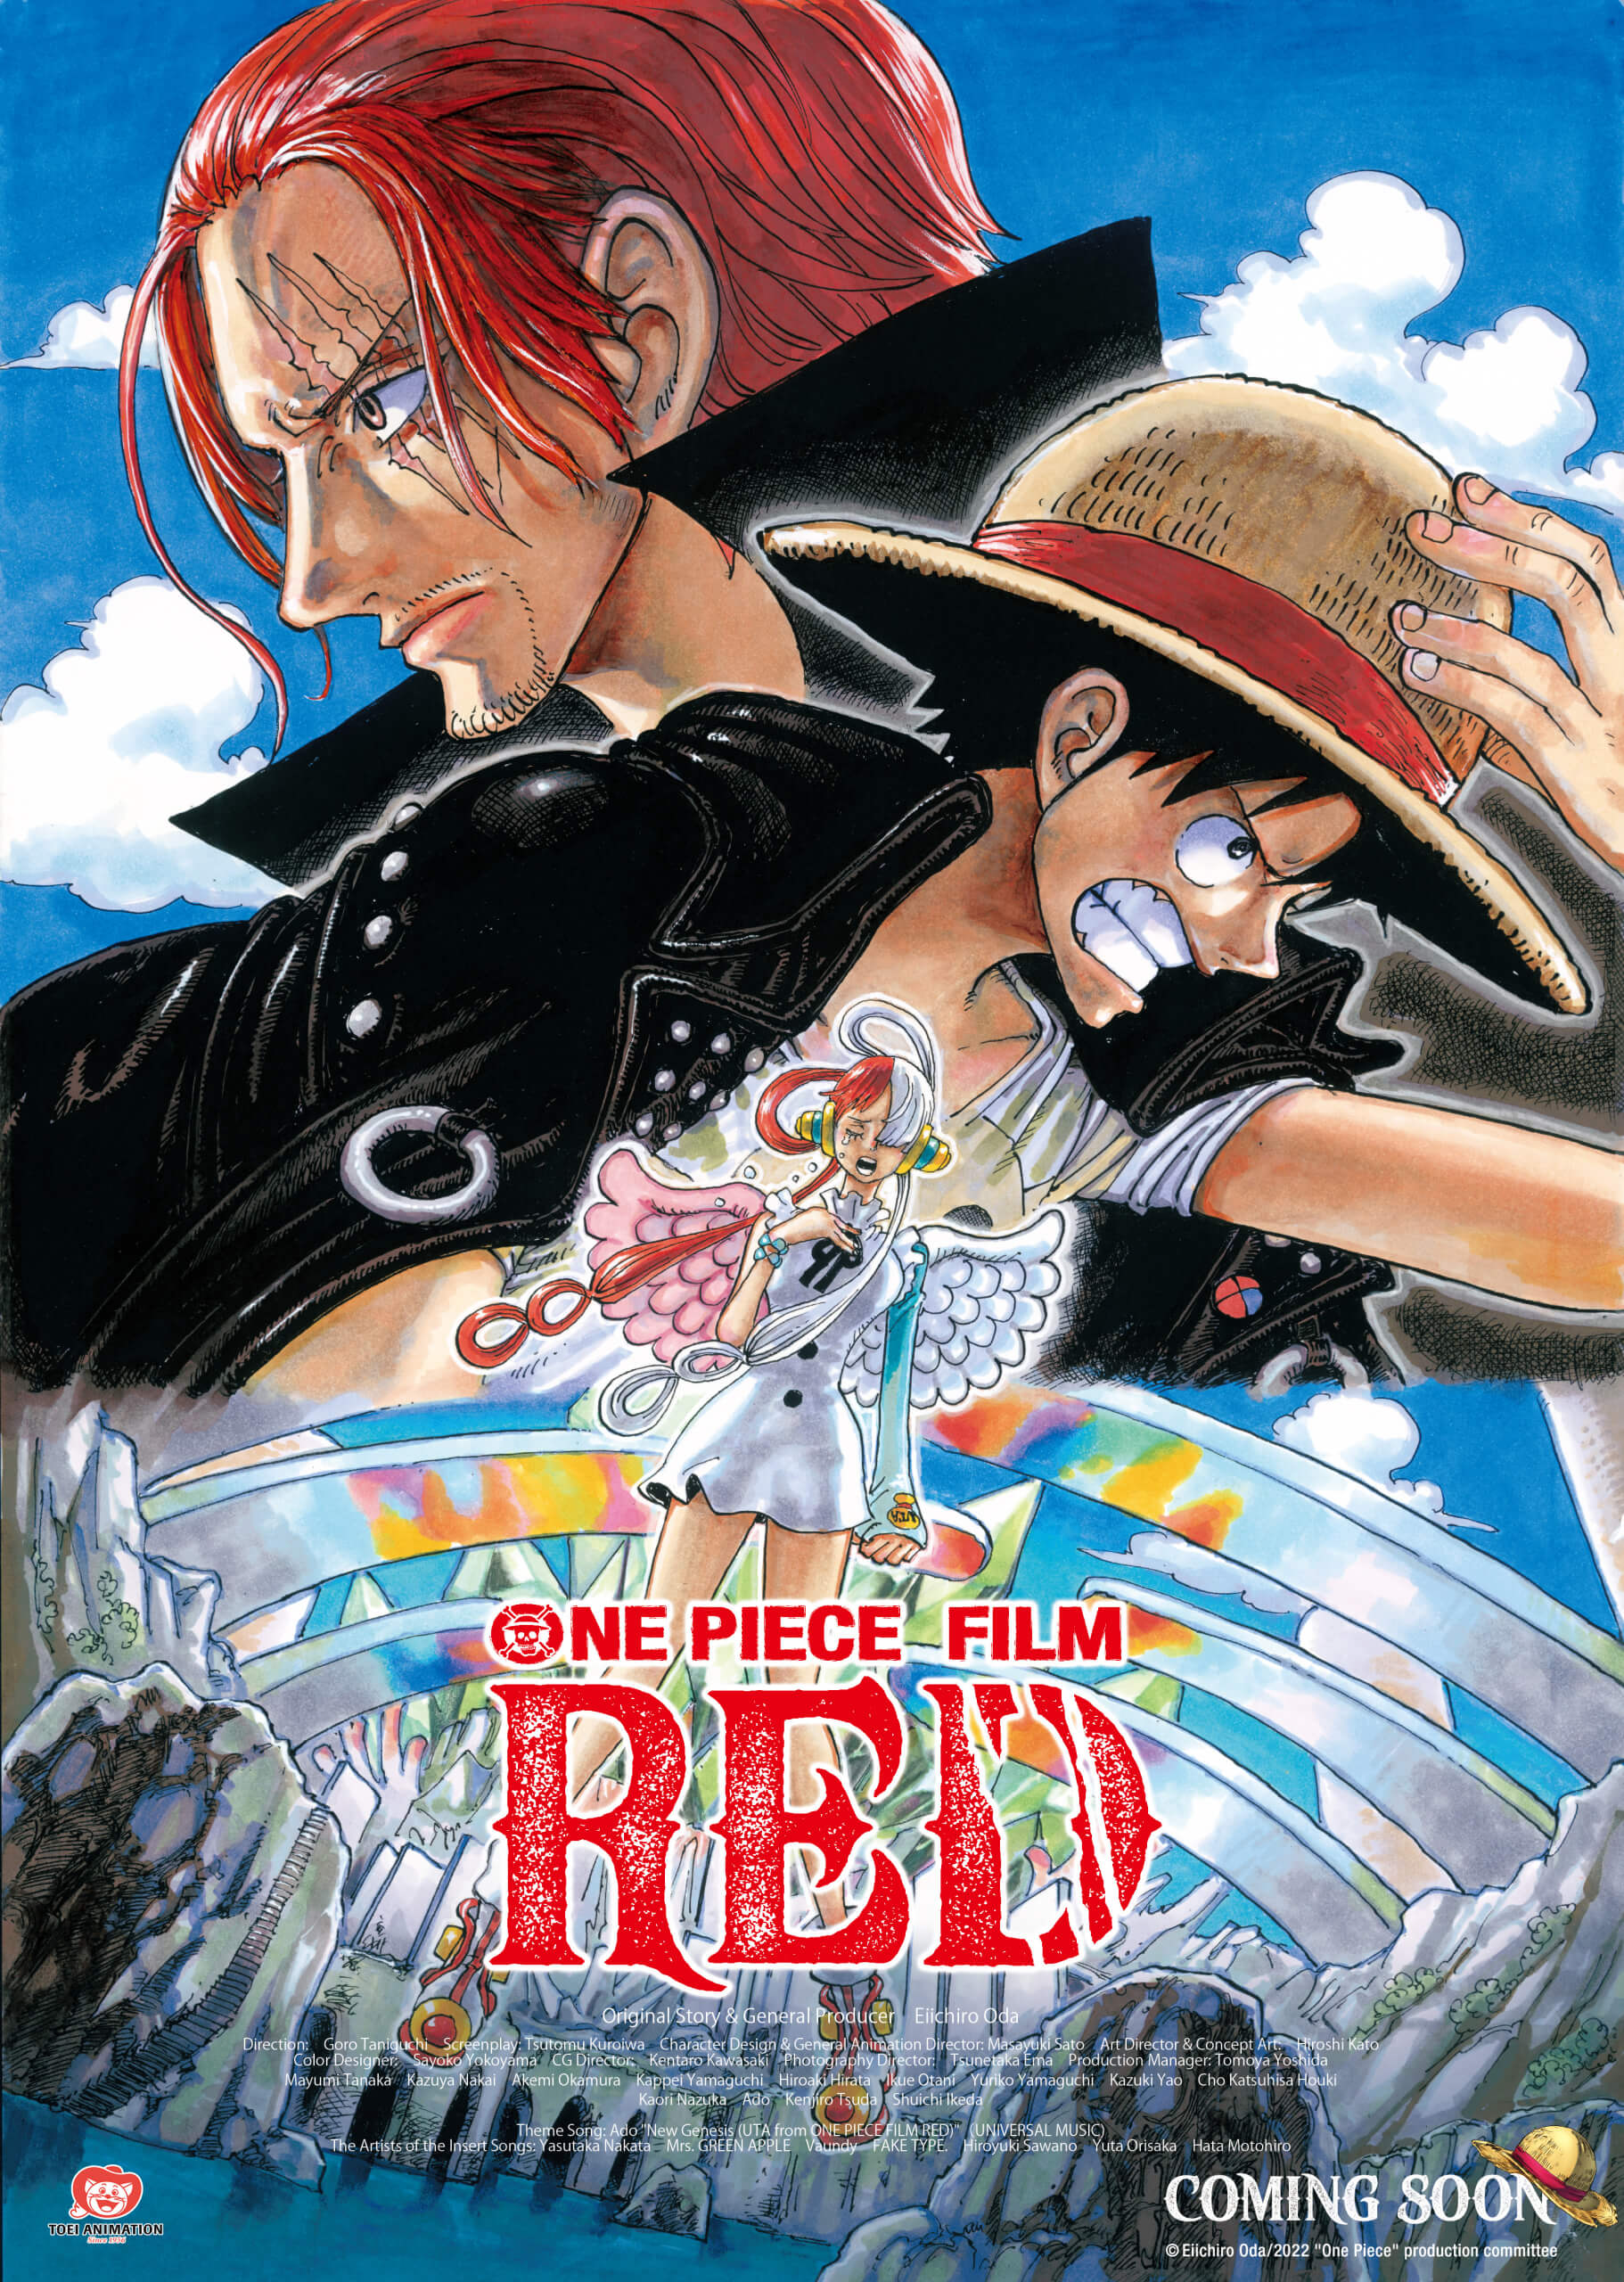 ONE PIECE FILM: RED は、日本ですべての興行記録を更新した後、ヨーロッパのファンの心をつかむ準備ができています